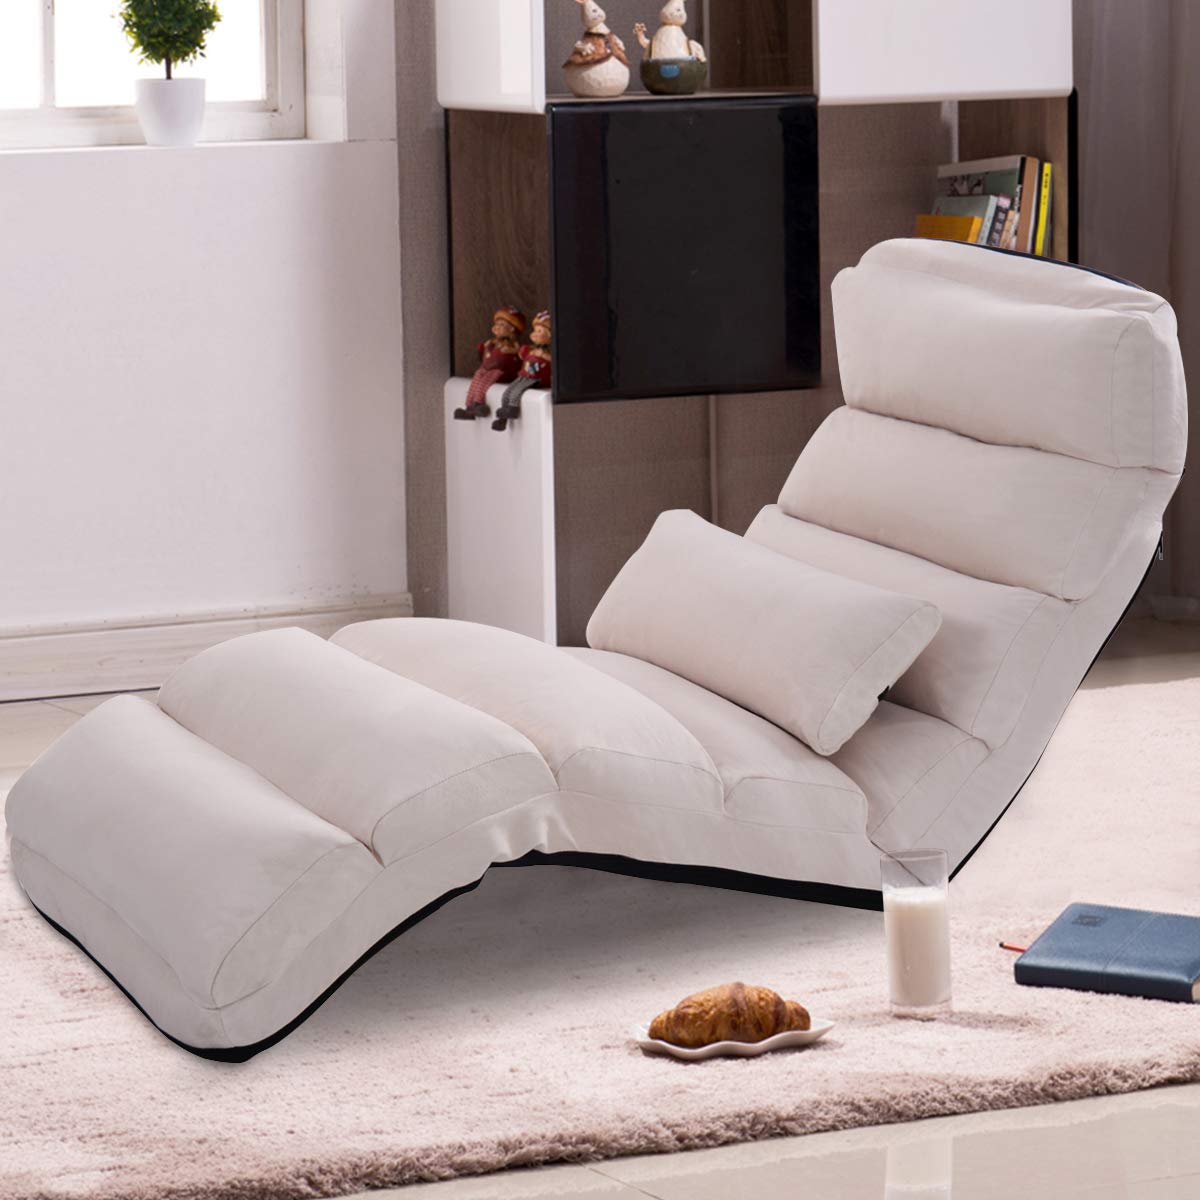 Giantex Folding Lazy Sofa W/Pillow (Beige), $92 @amazon.com